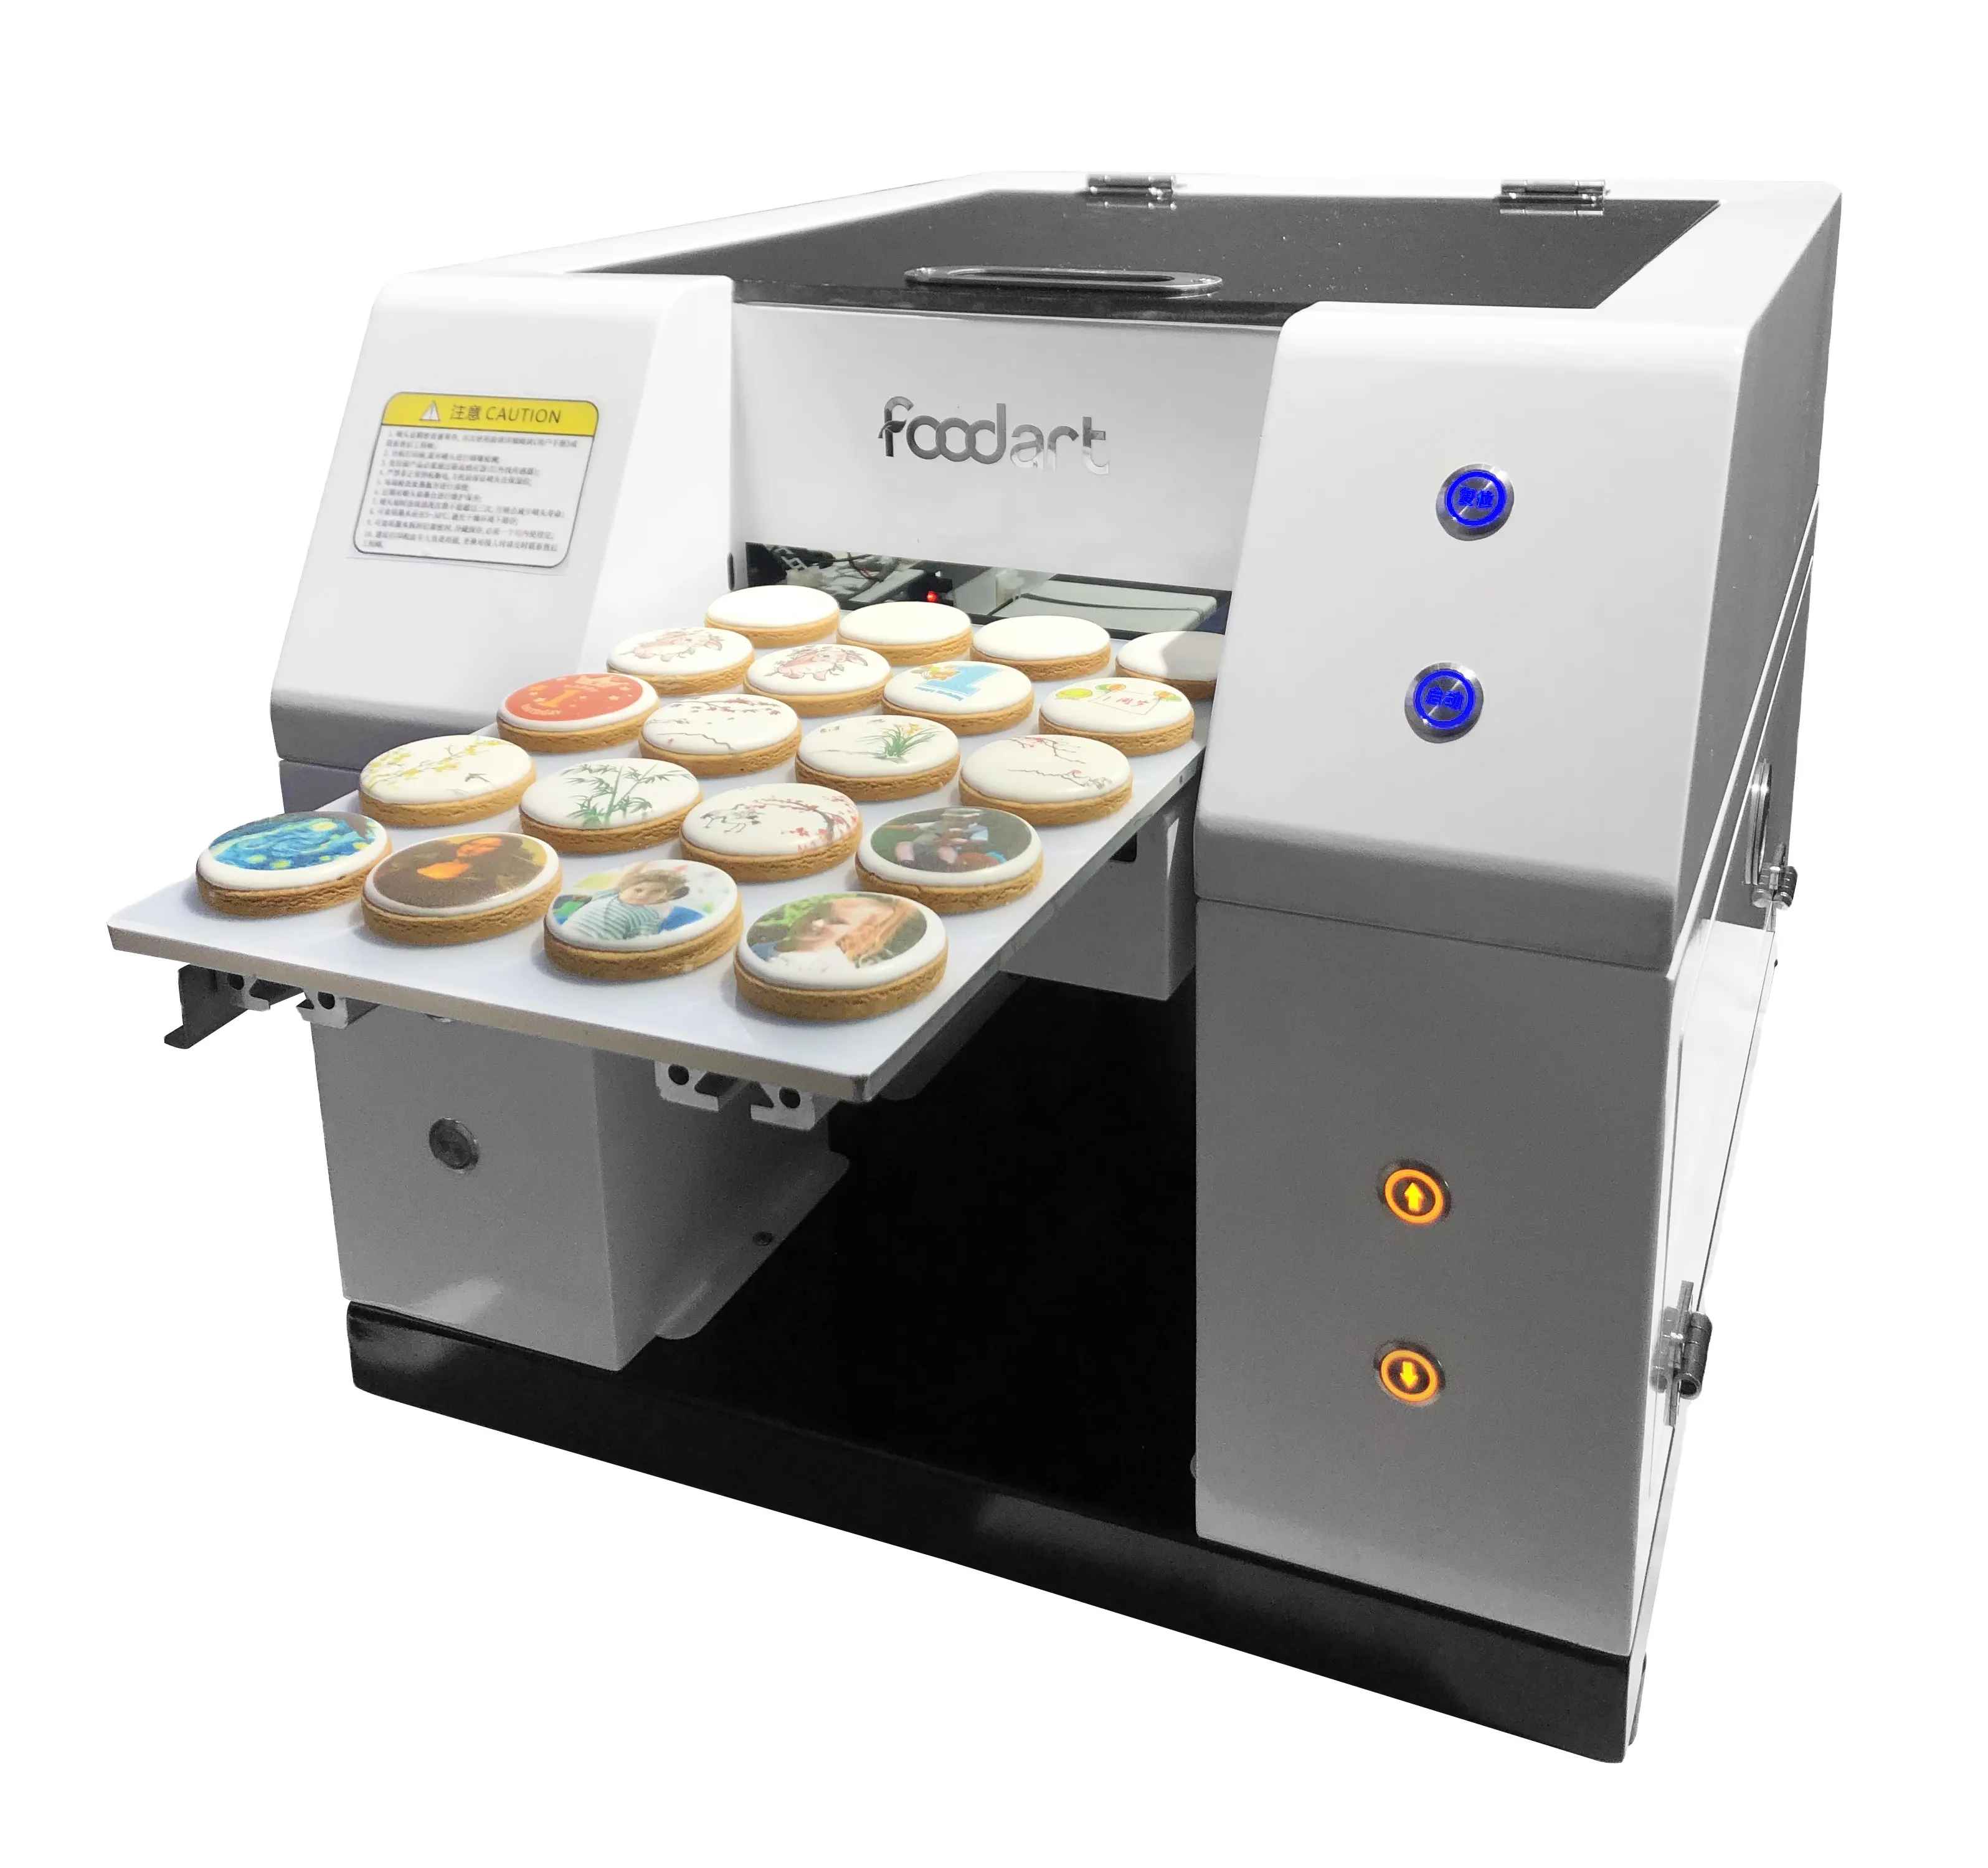 Bake Shop Gebrauchte Druckmaschine in Lebensmittel qualität A4 Essbarer Lebensmittel drucker für den direkten Druck auf Keksen